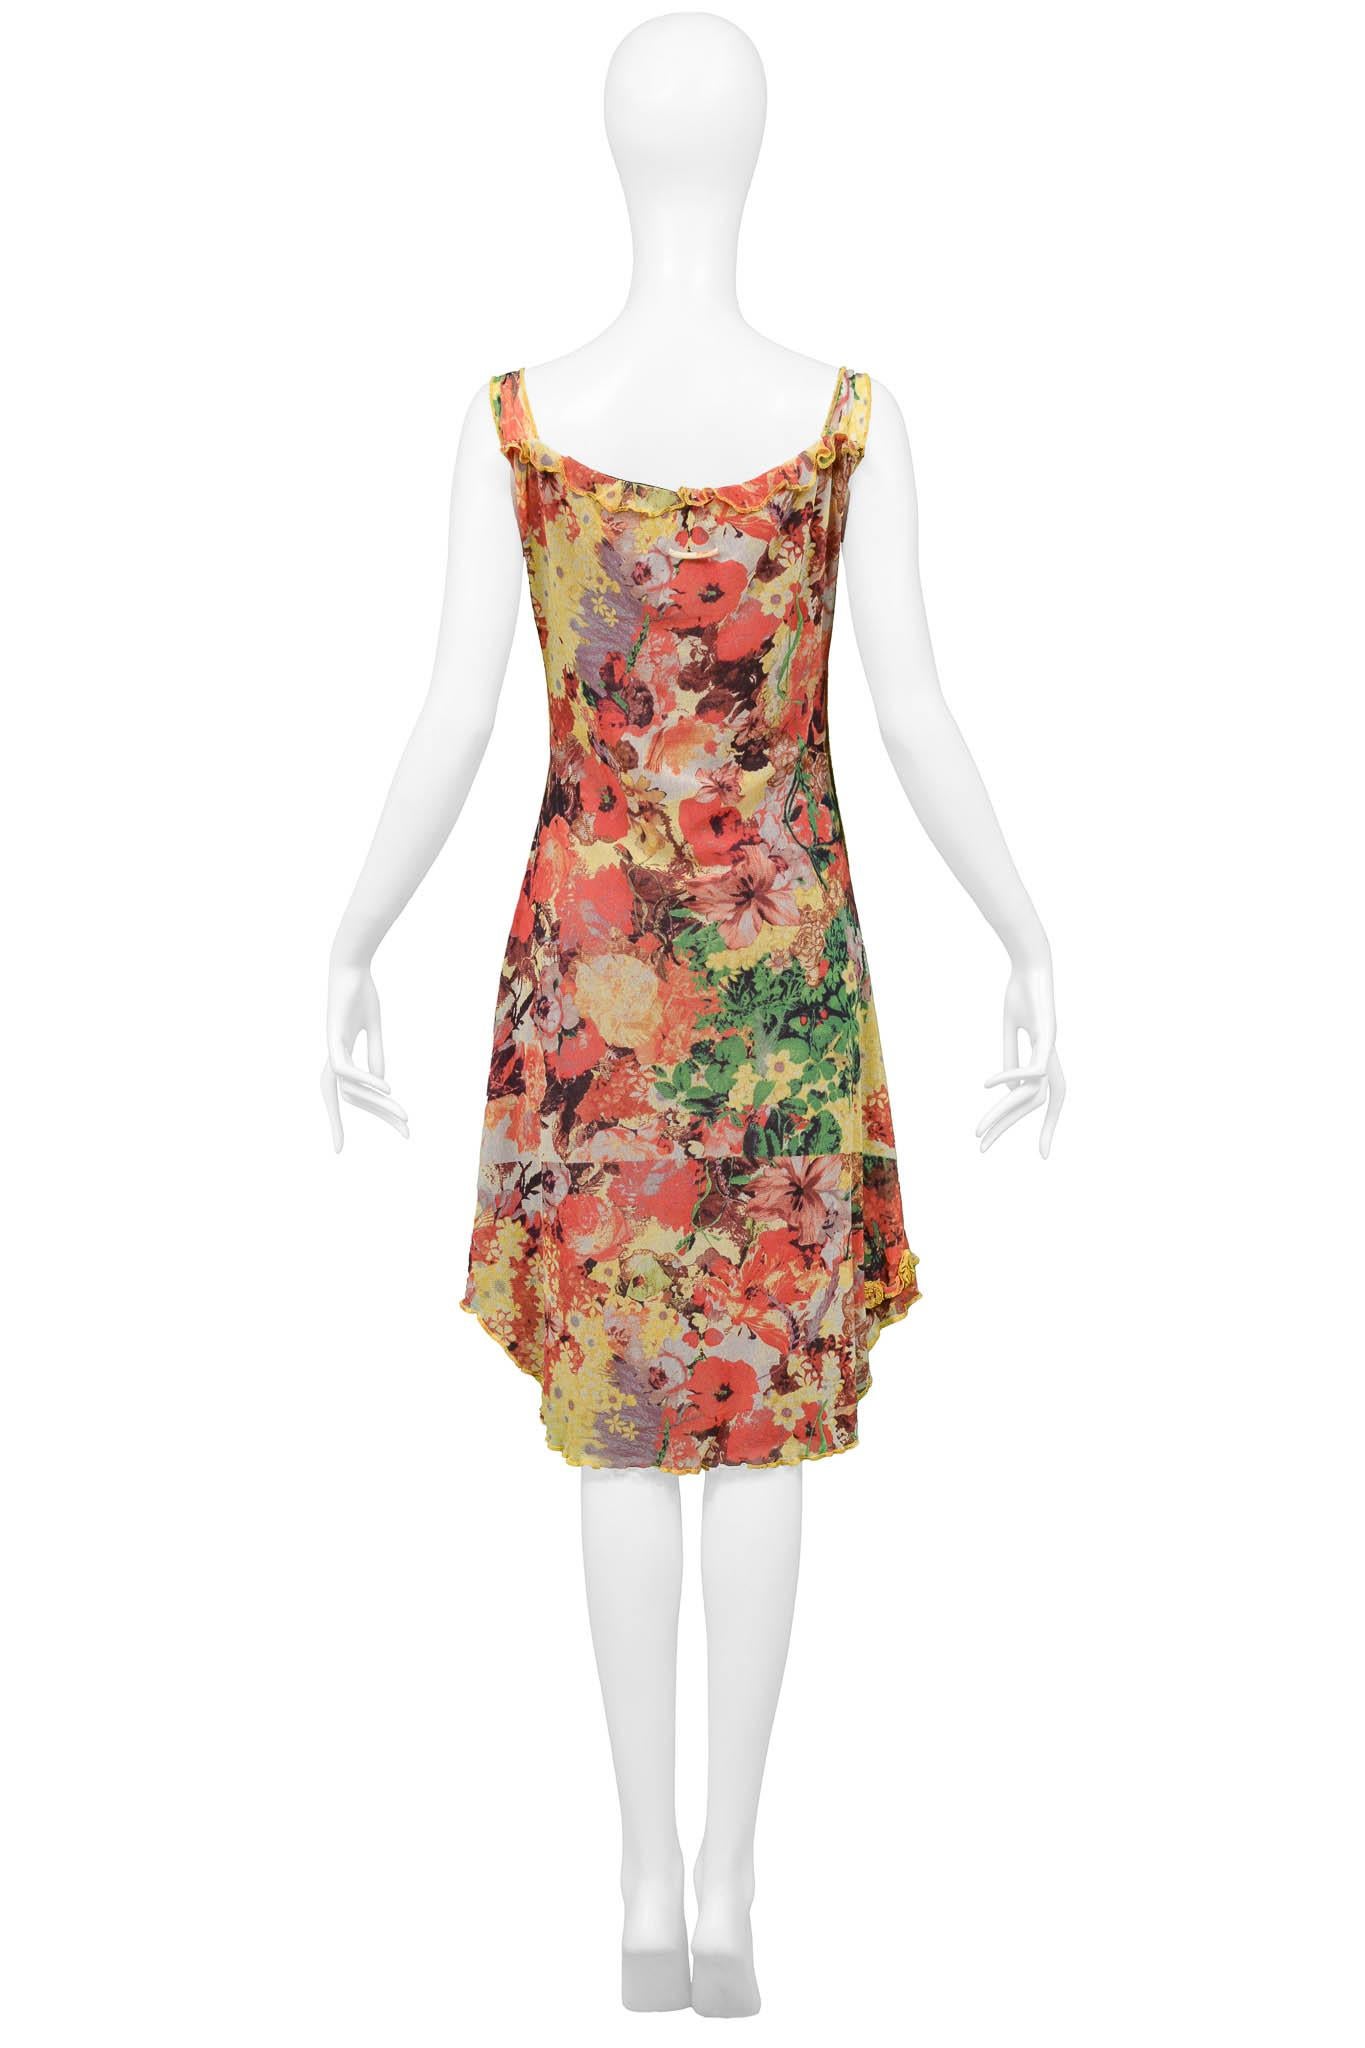 Jean Paul Gaultier Floral Print Mesh Dress With Portrait For Sale 1